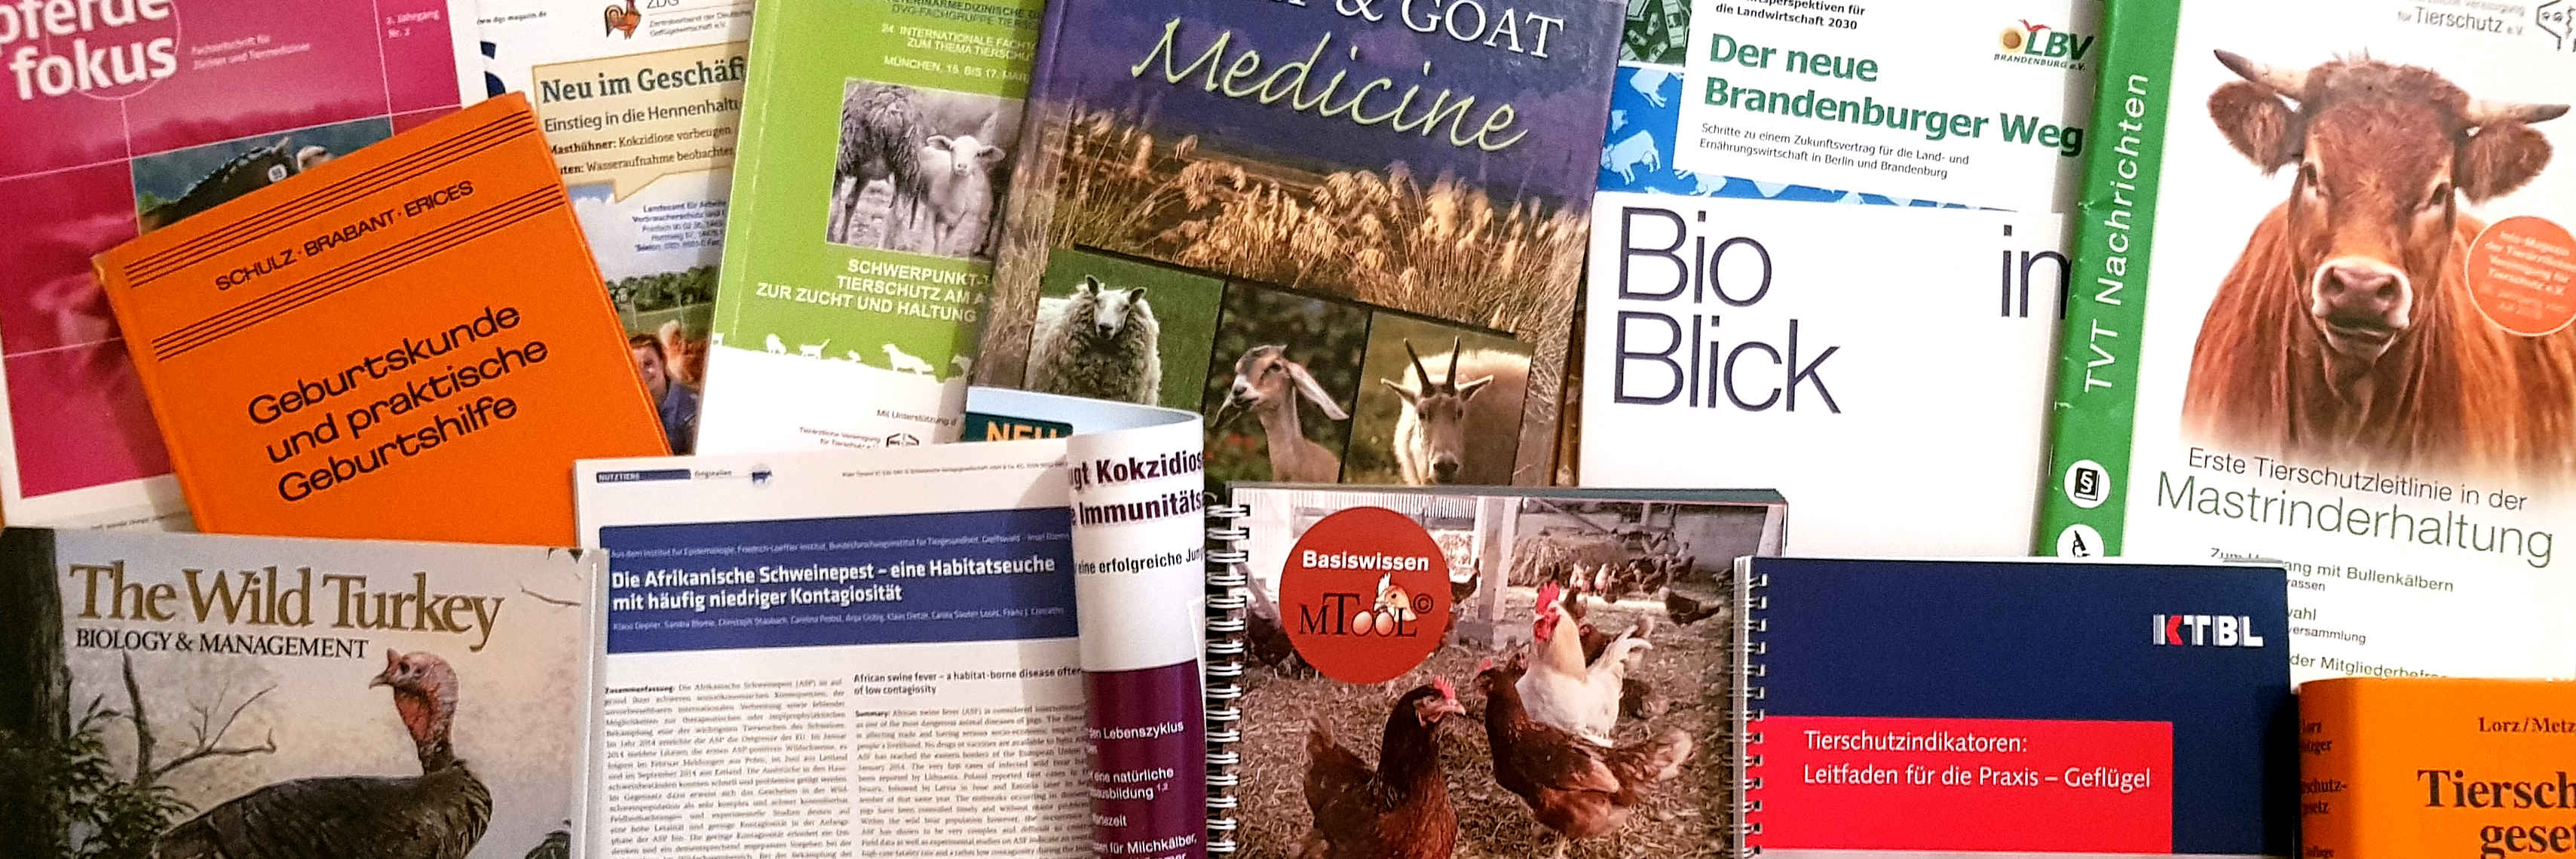 Foto von verschiedenen Publikationen zu Tierschutz, Tiergesundheit und Tierhaltung